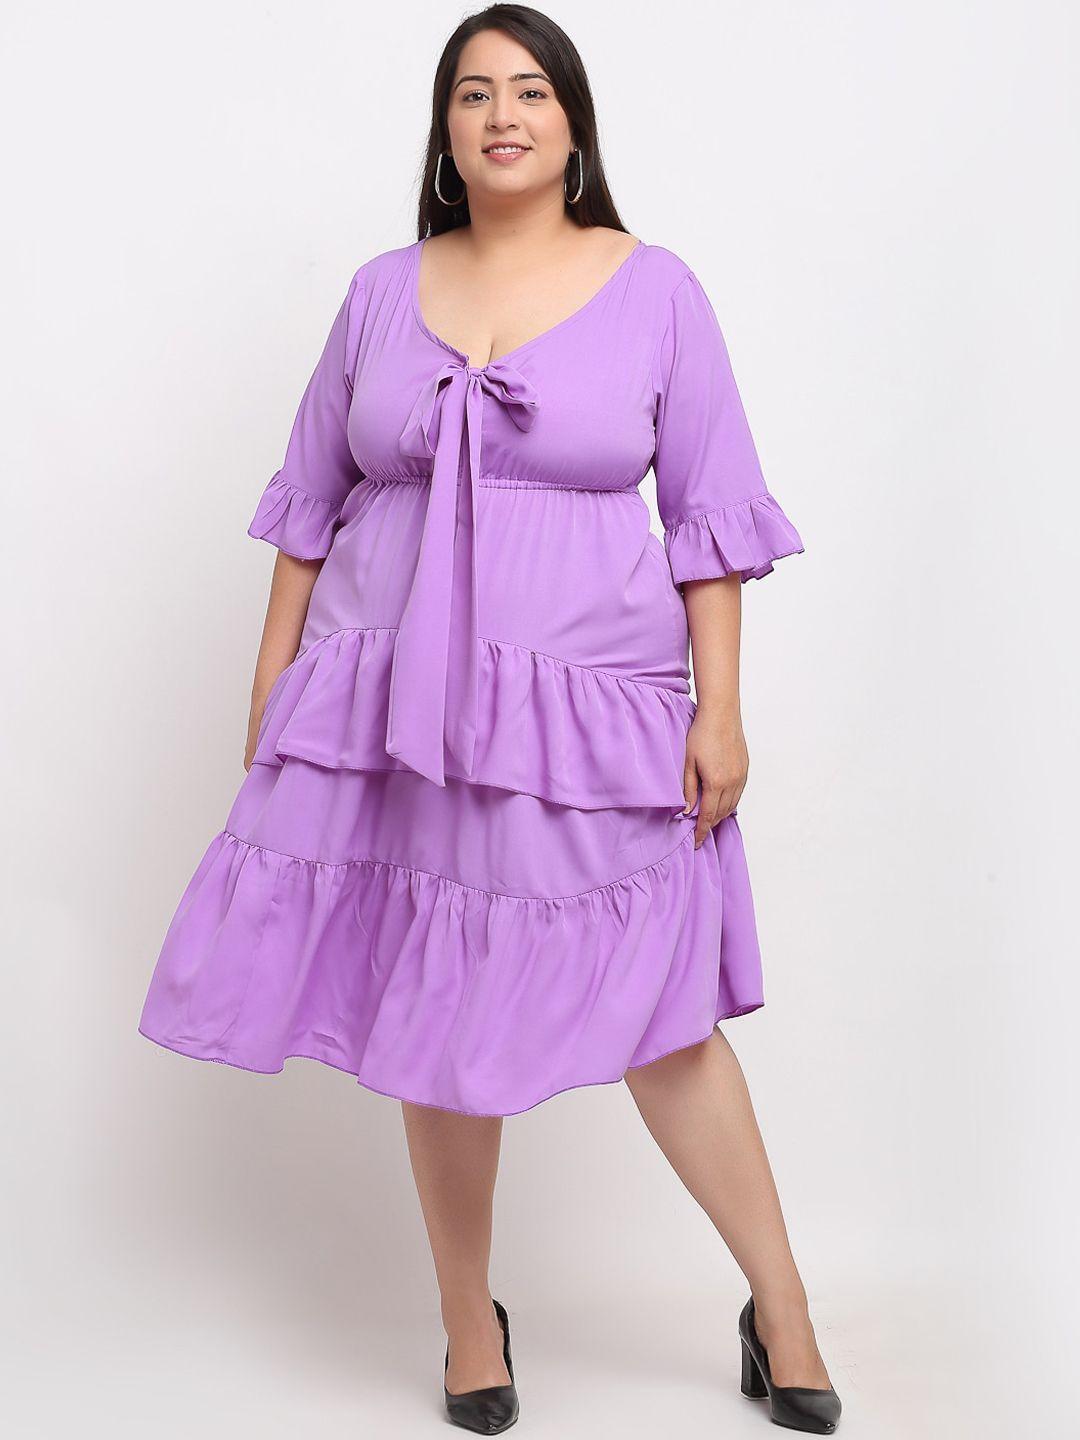 flambeur-plus-size-women-lavender-crepe-empire-dress